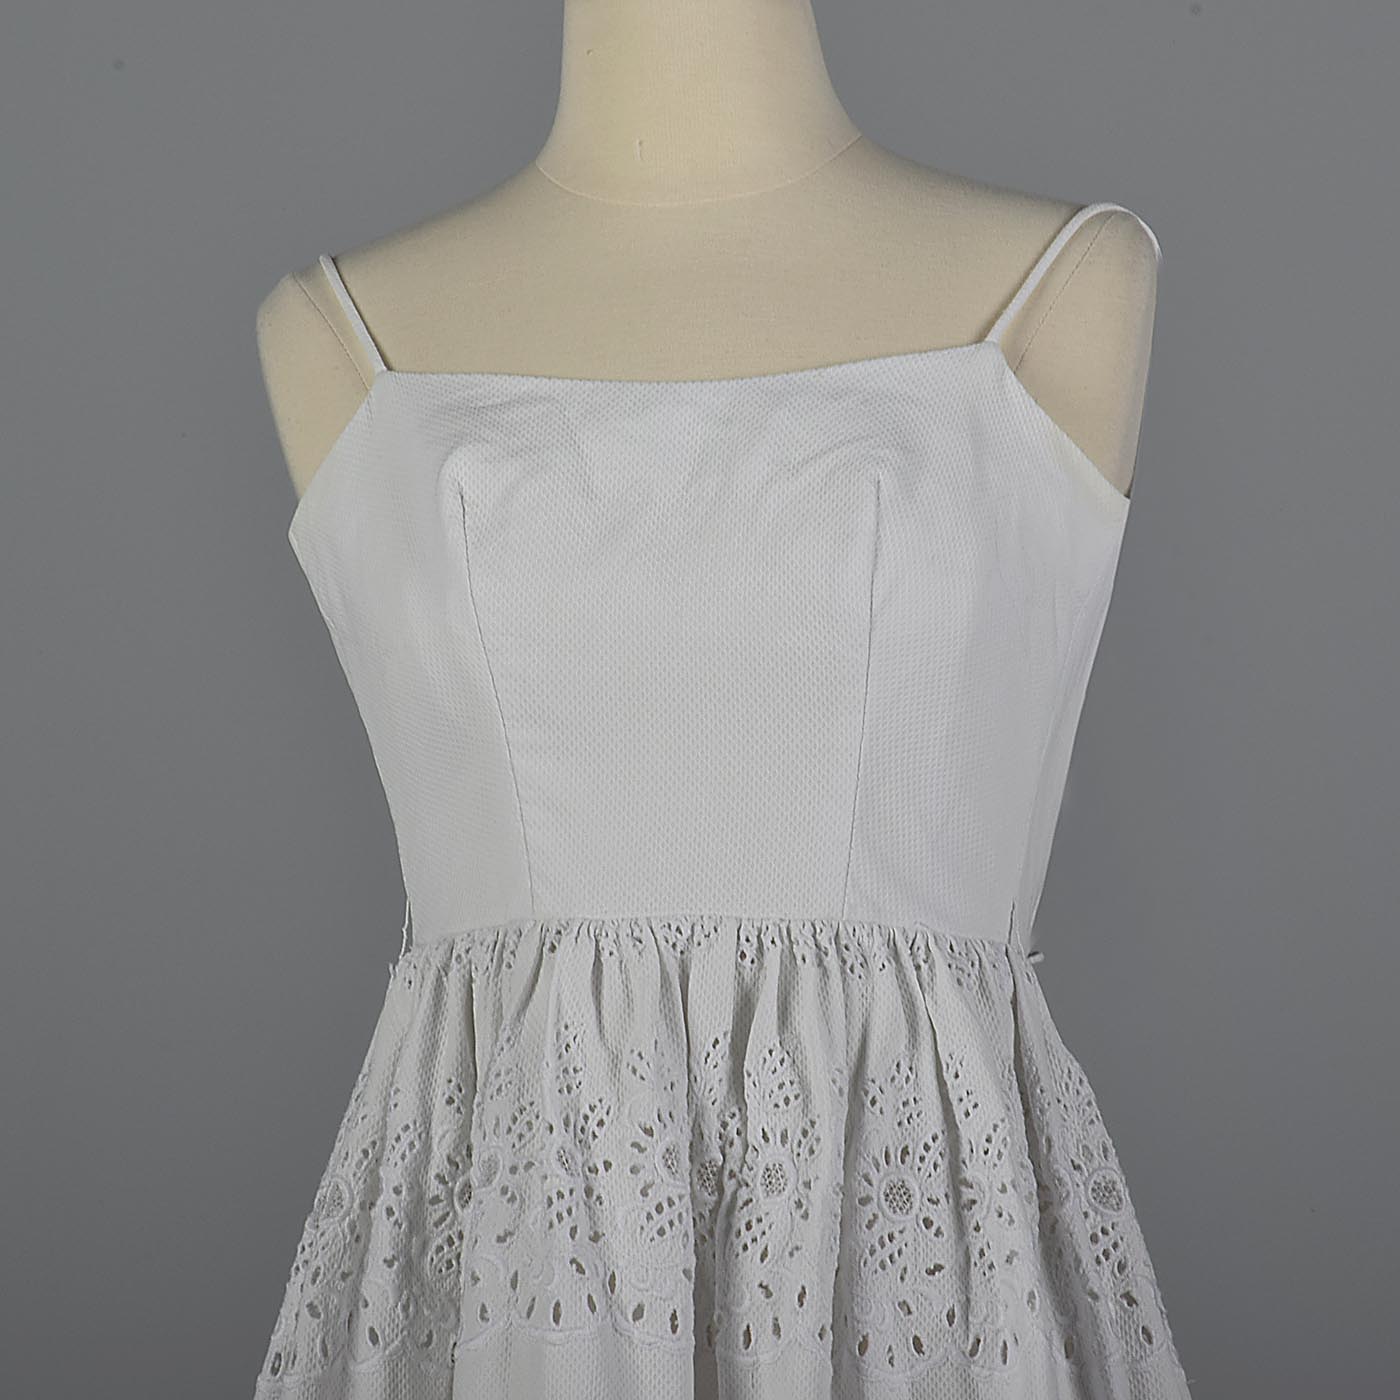 XXS 1950s Eyelet Dress White Cotton Sleeveless